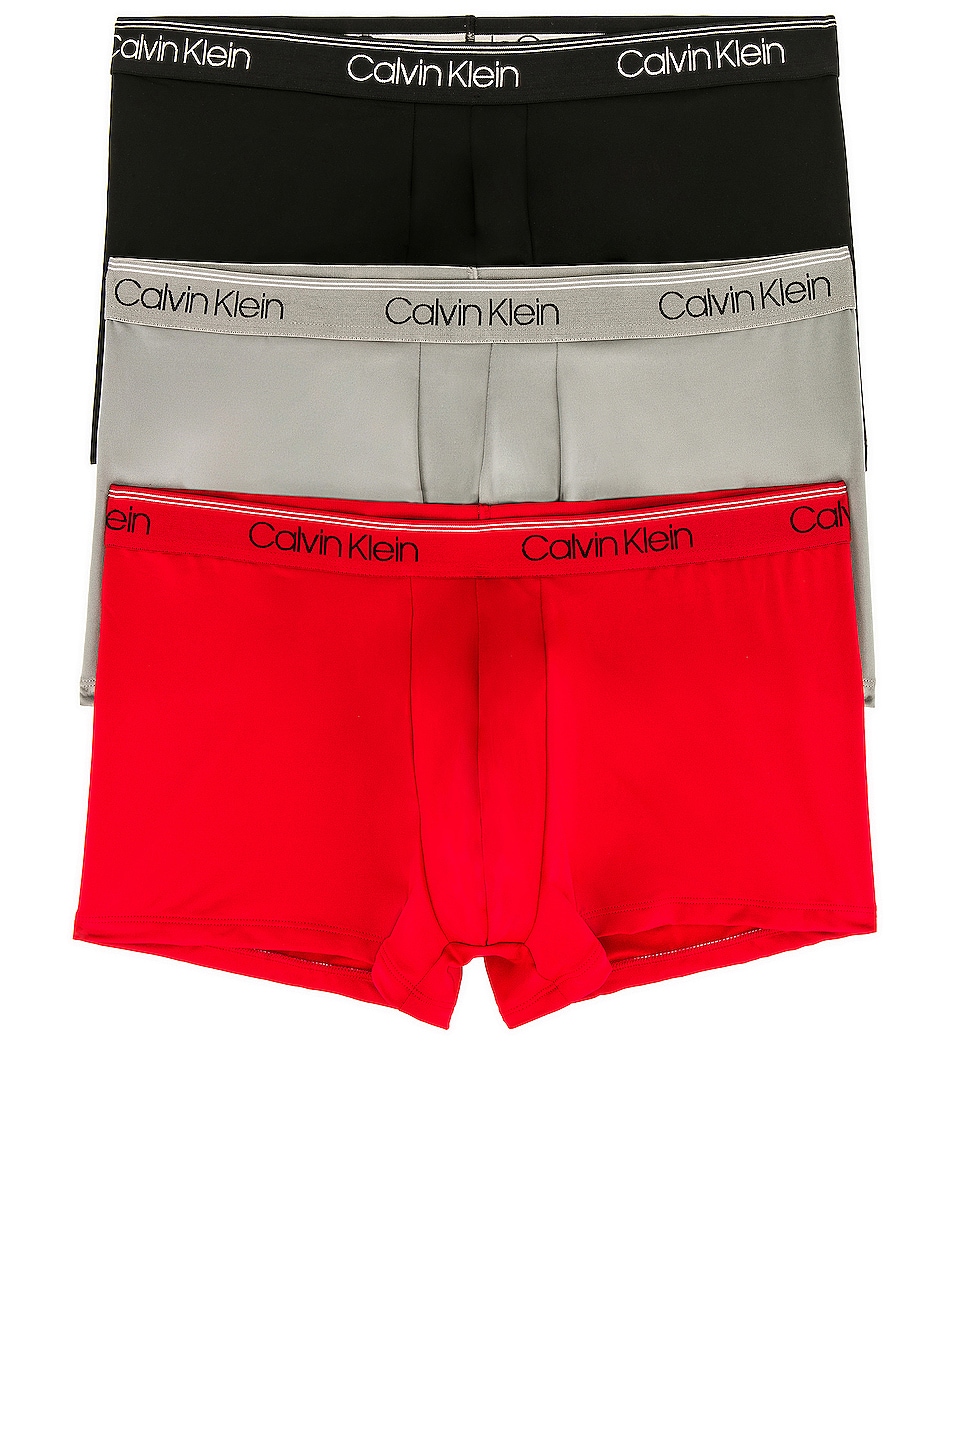 Image 1 of Calvin Klein Underwear Calvin Klein Low Rise Trunk 3 Piece Set in Black, Convoy, & Red Gala